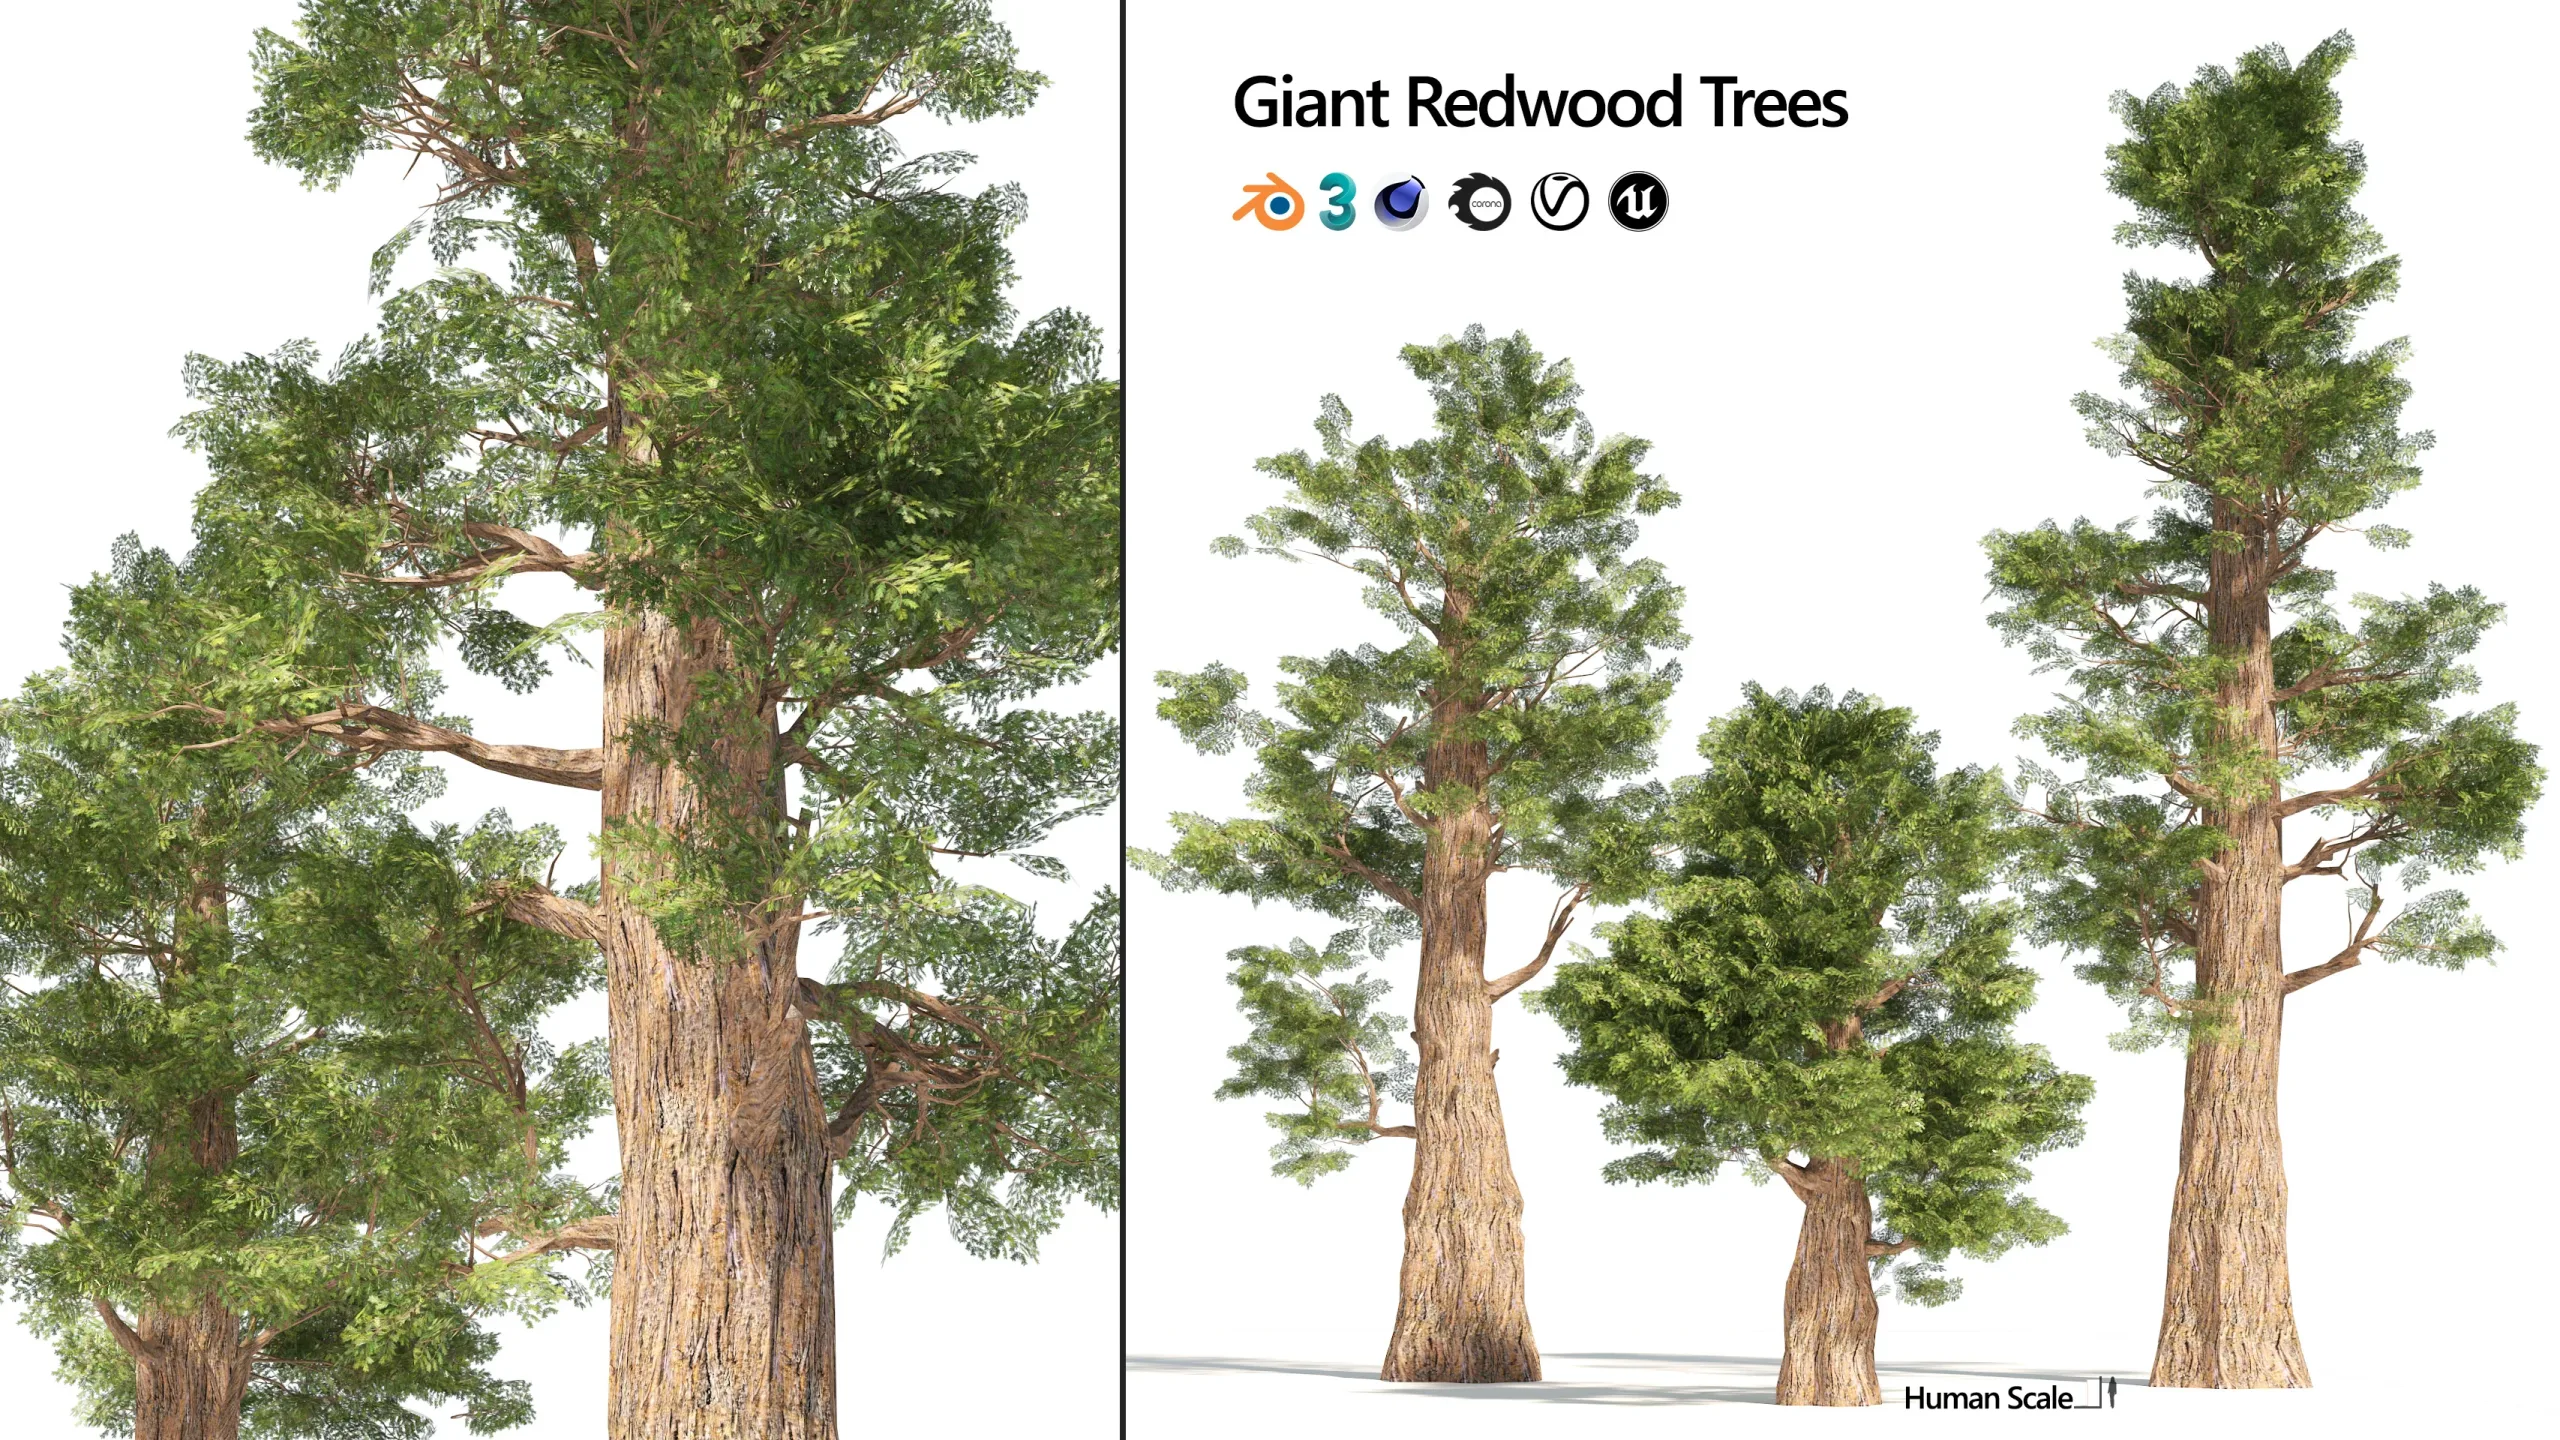 Giant sequoia Redwood trees